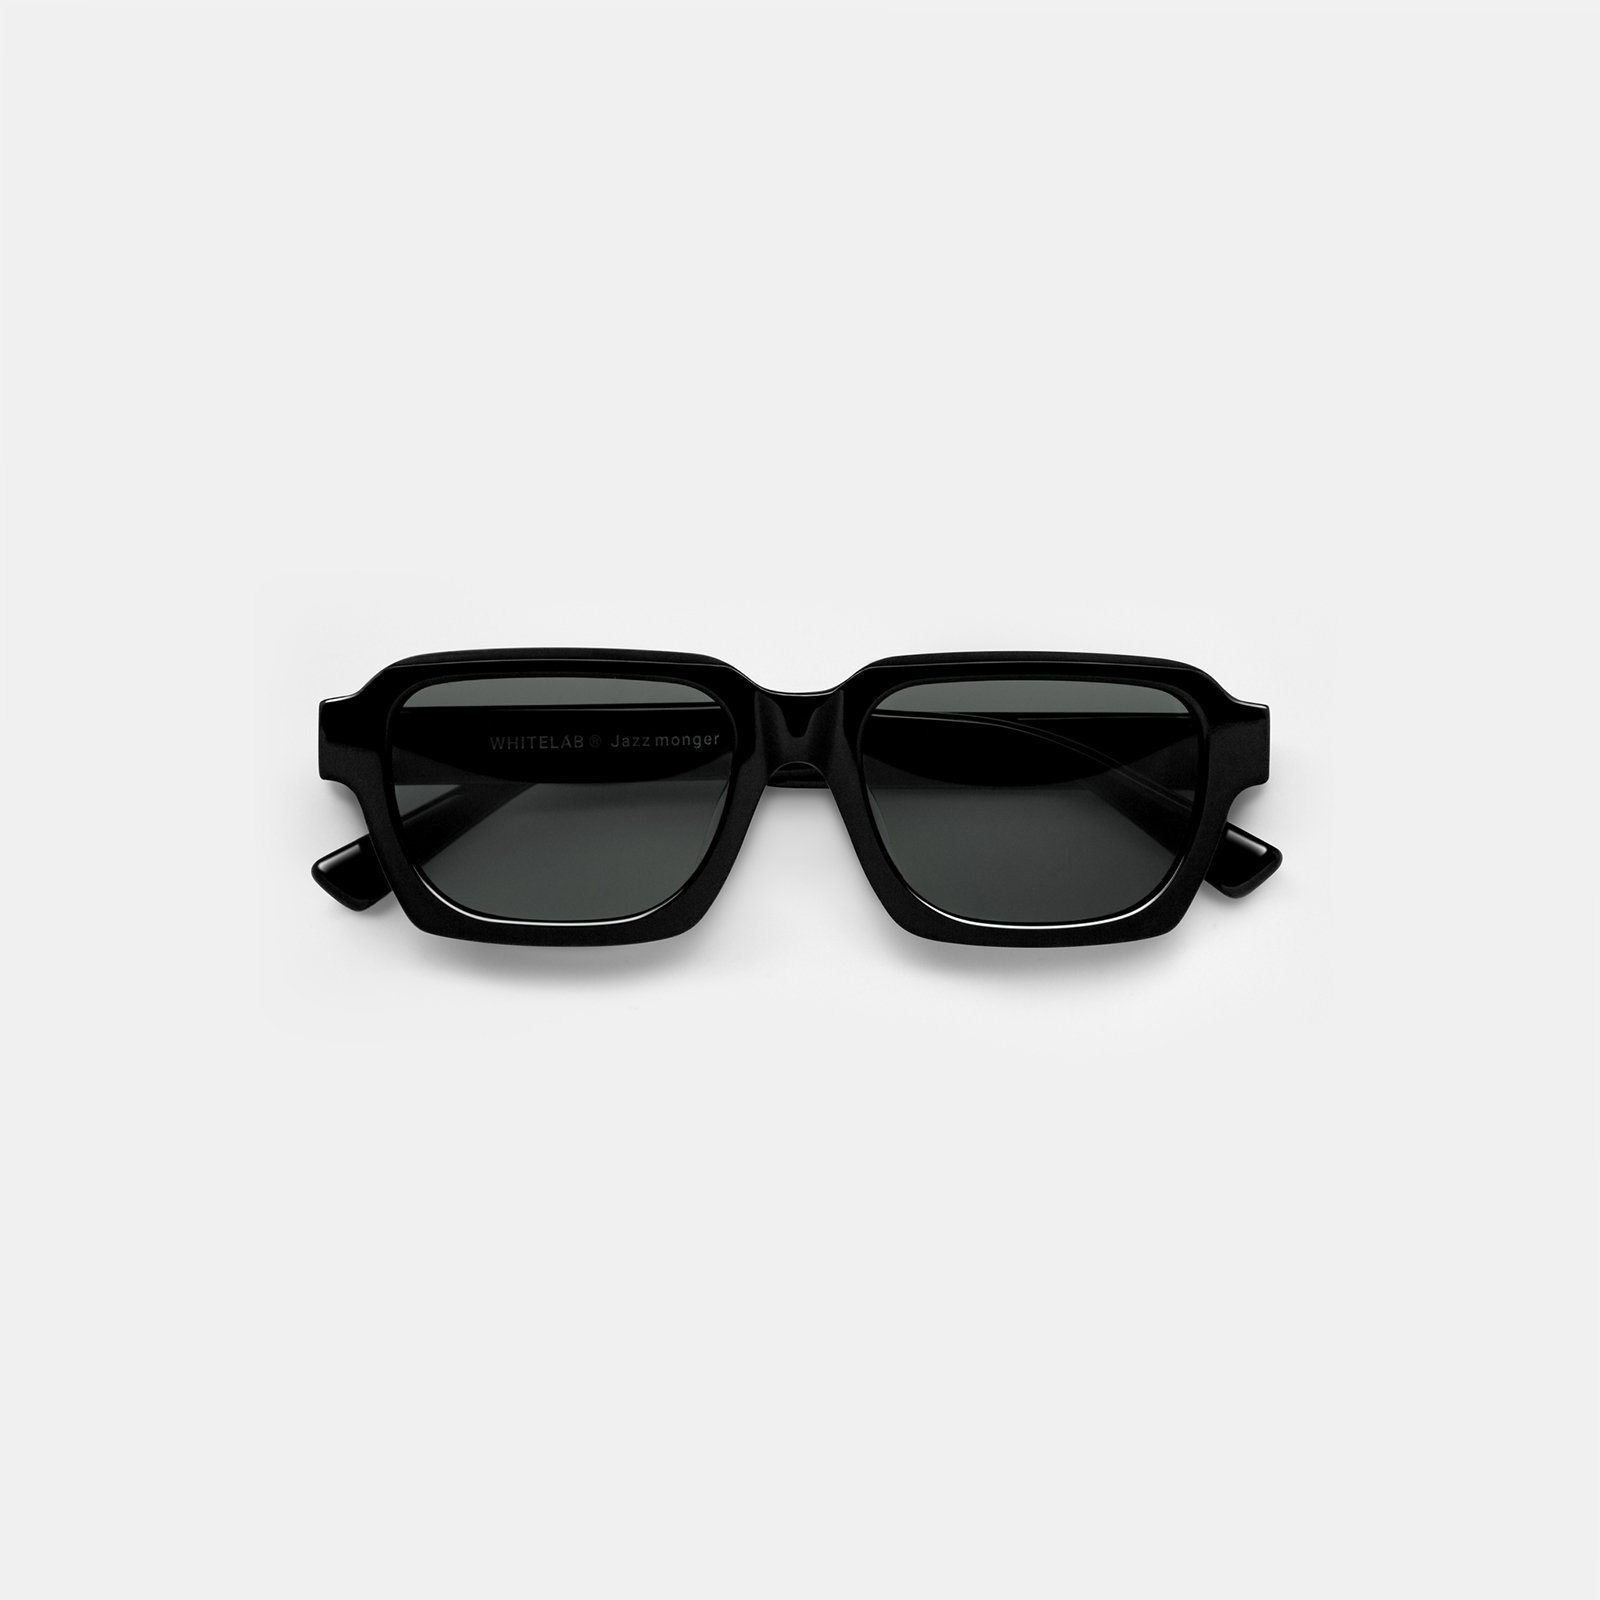  черные солнцезащитные очки White Lab Jazz Monger Jazz-black/black - цена, описание, фото 1